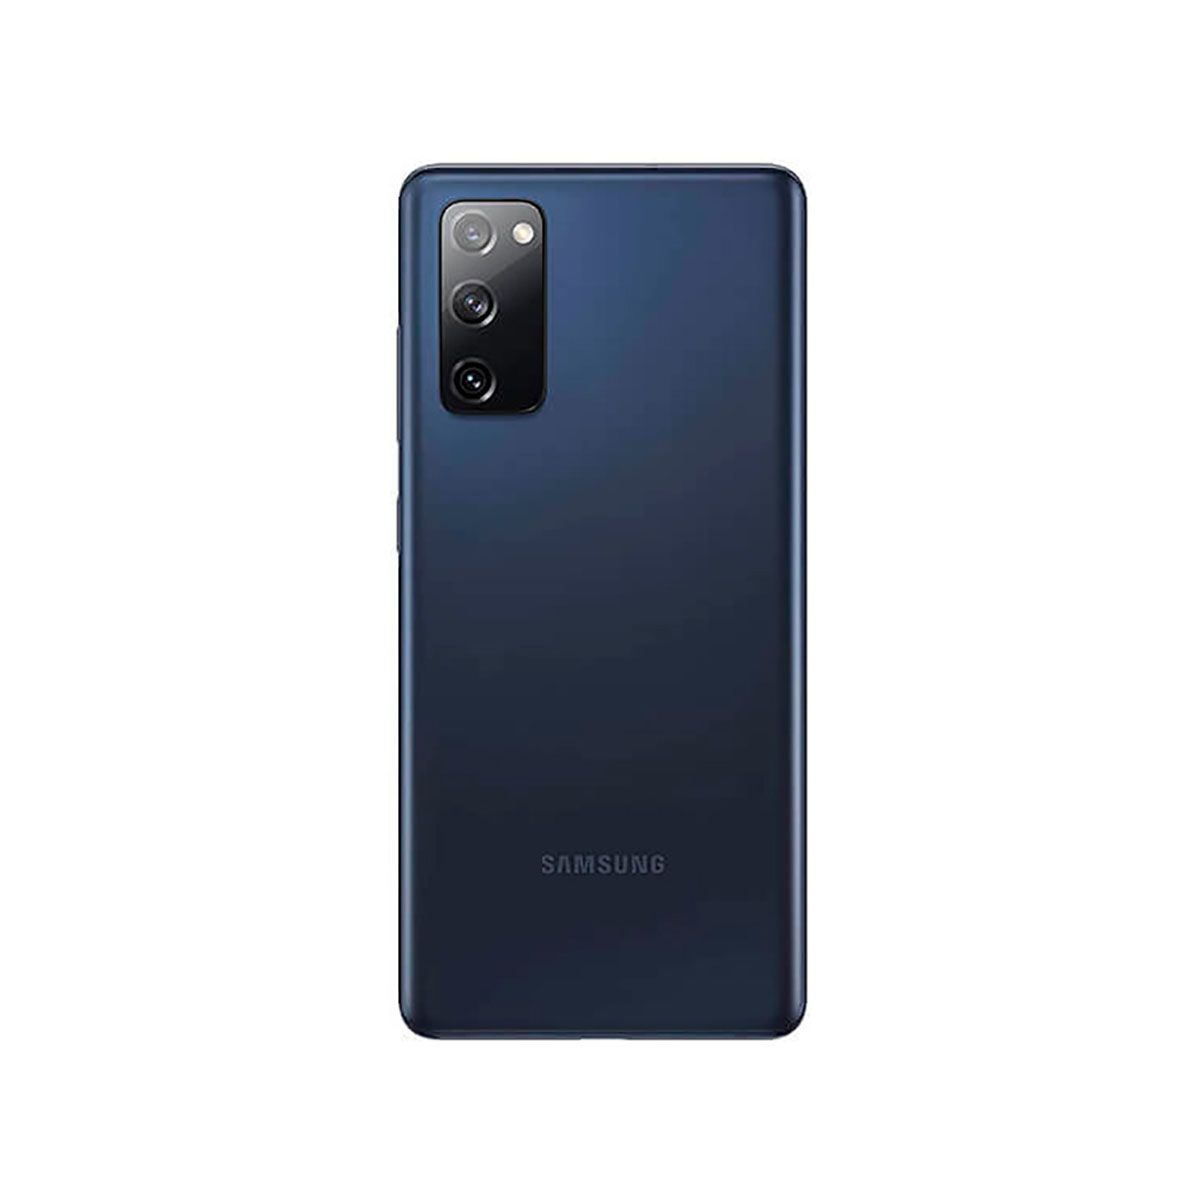 Samsung Galaxy S20 FE 5G 6GB/128GB Blue (Cloud Navy) Dual SIM G781